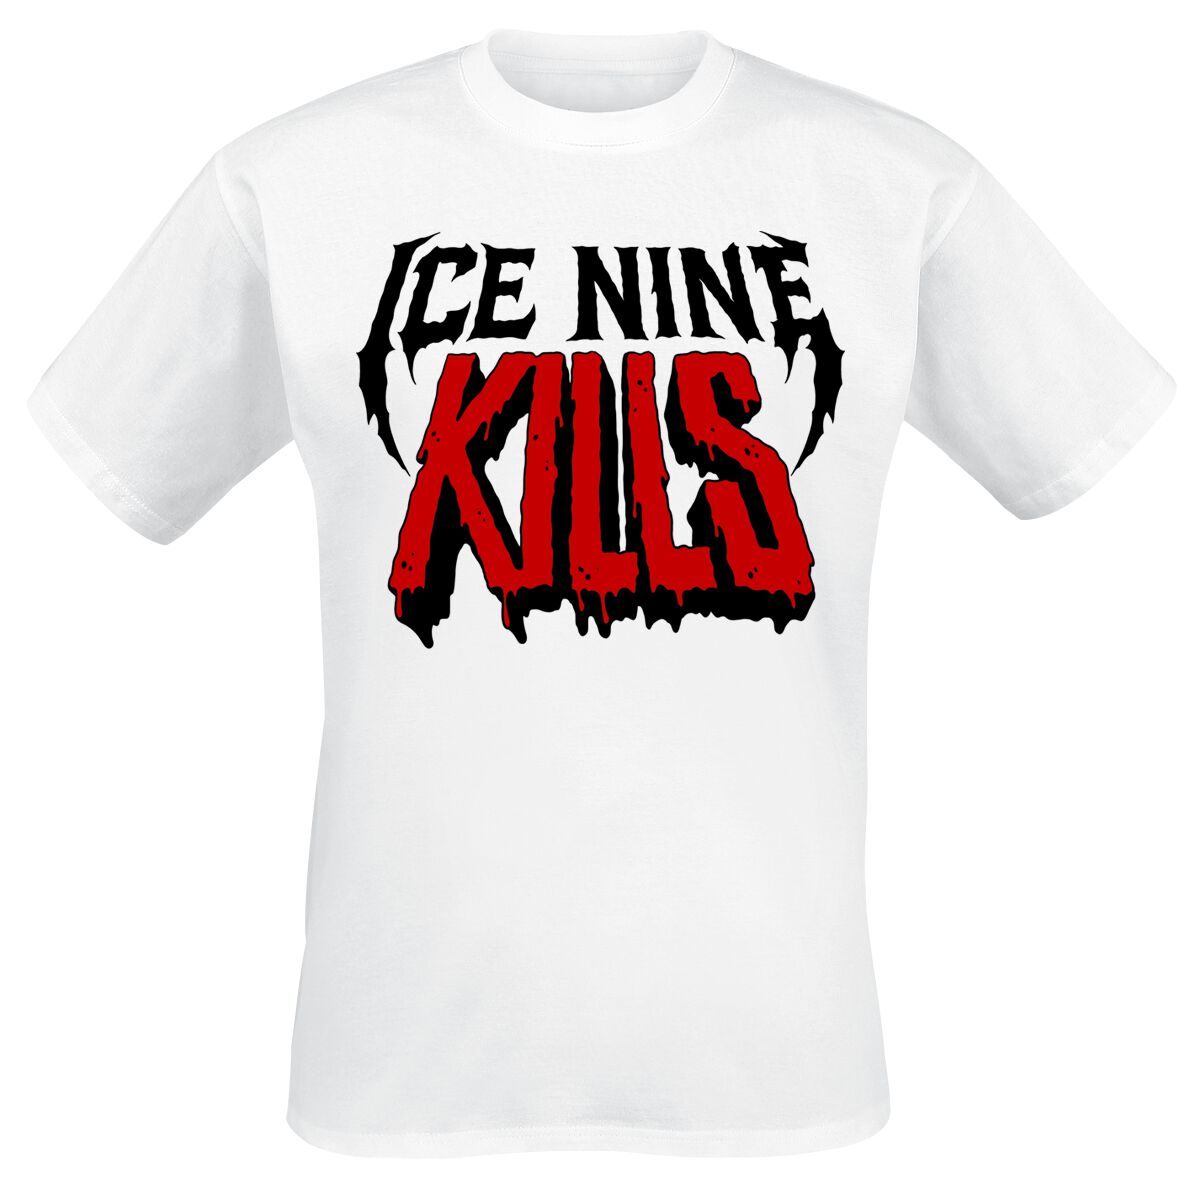 Ice Nine Kills T-Shirt - CARTOON - S bis 4XL - für Männer - Größe 4XL - weiß  - Lizenziertes Merchandise!